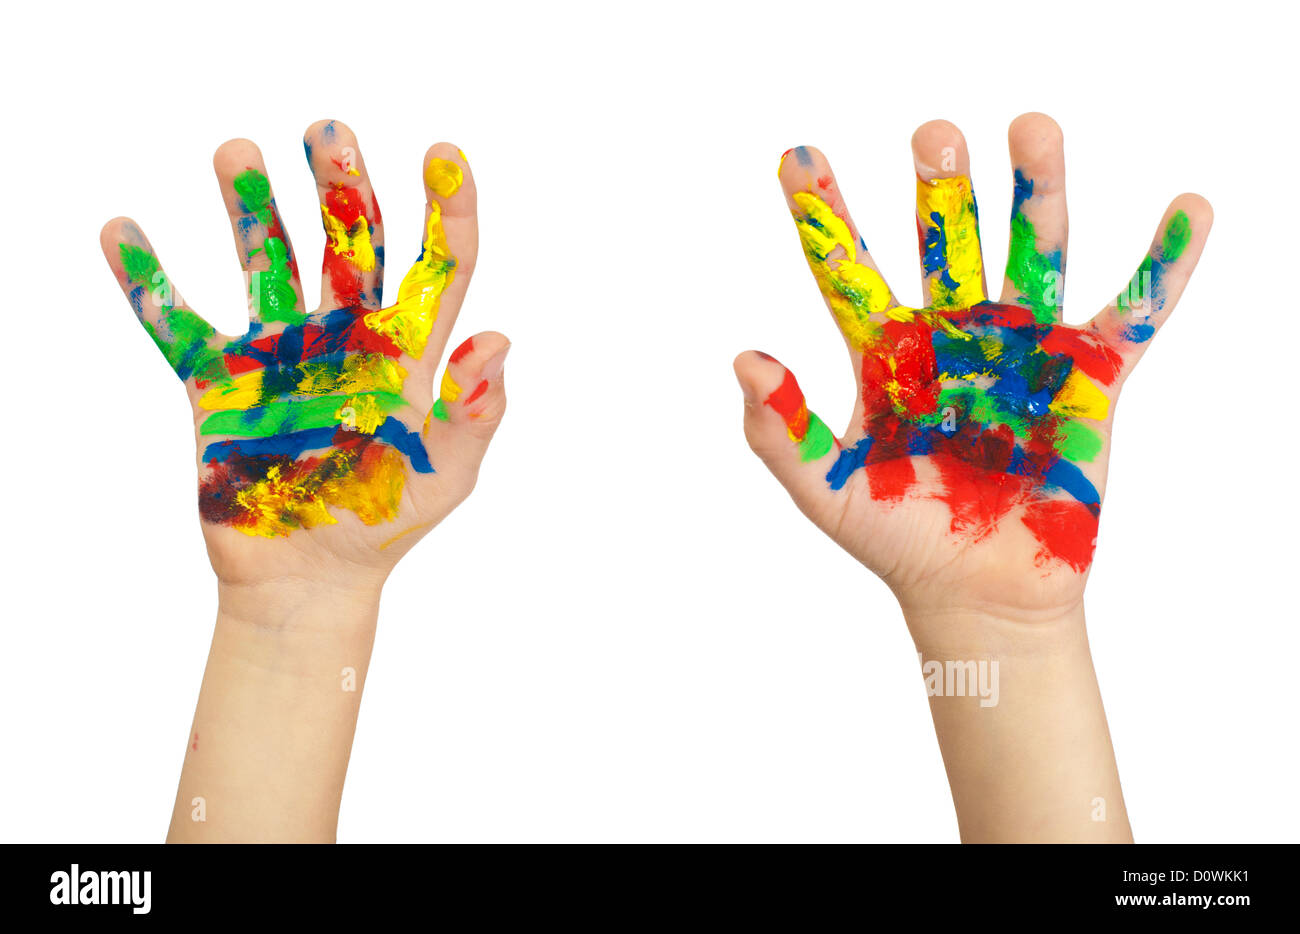 Les mains des enfants peints avec de la peinture colorée. Isolé blanc Banque D'Images